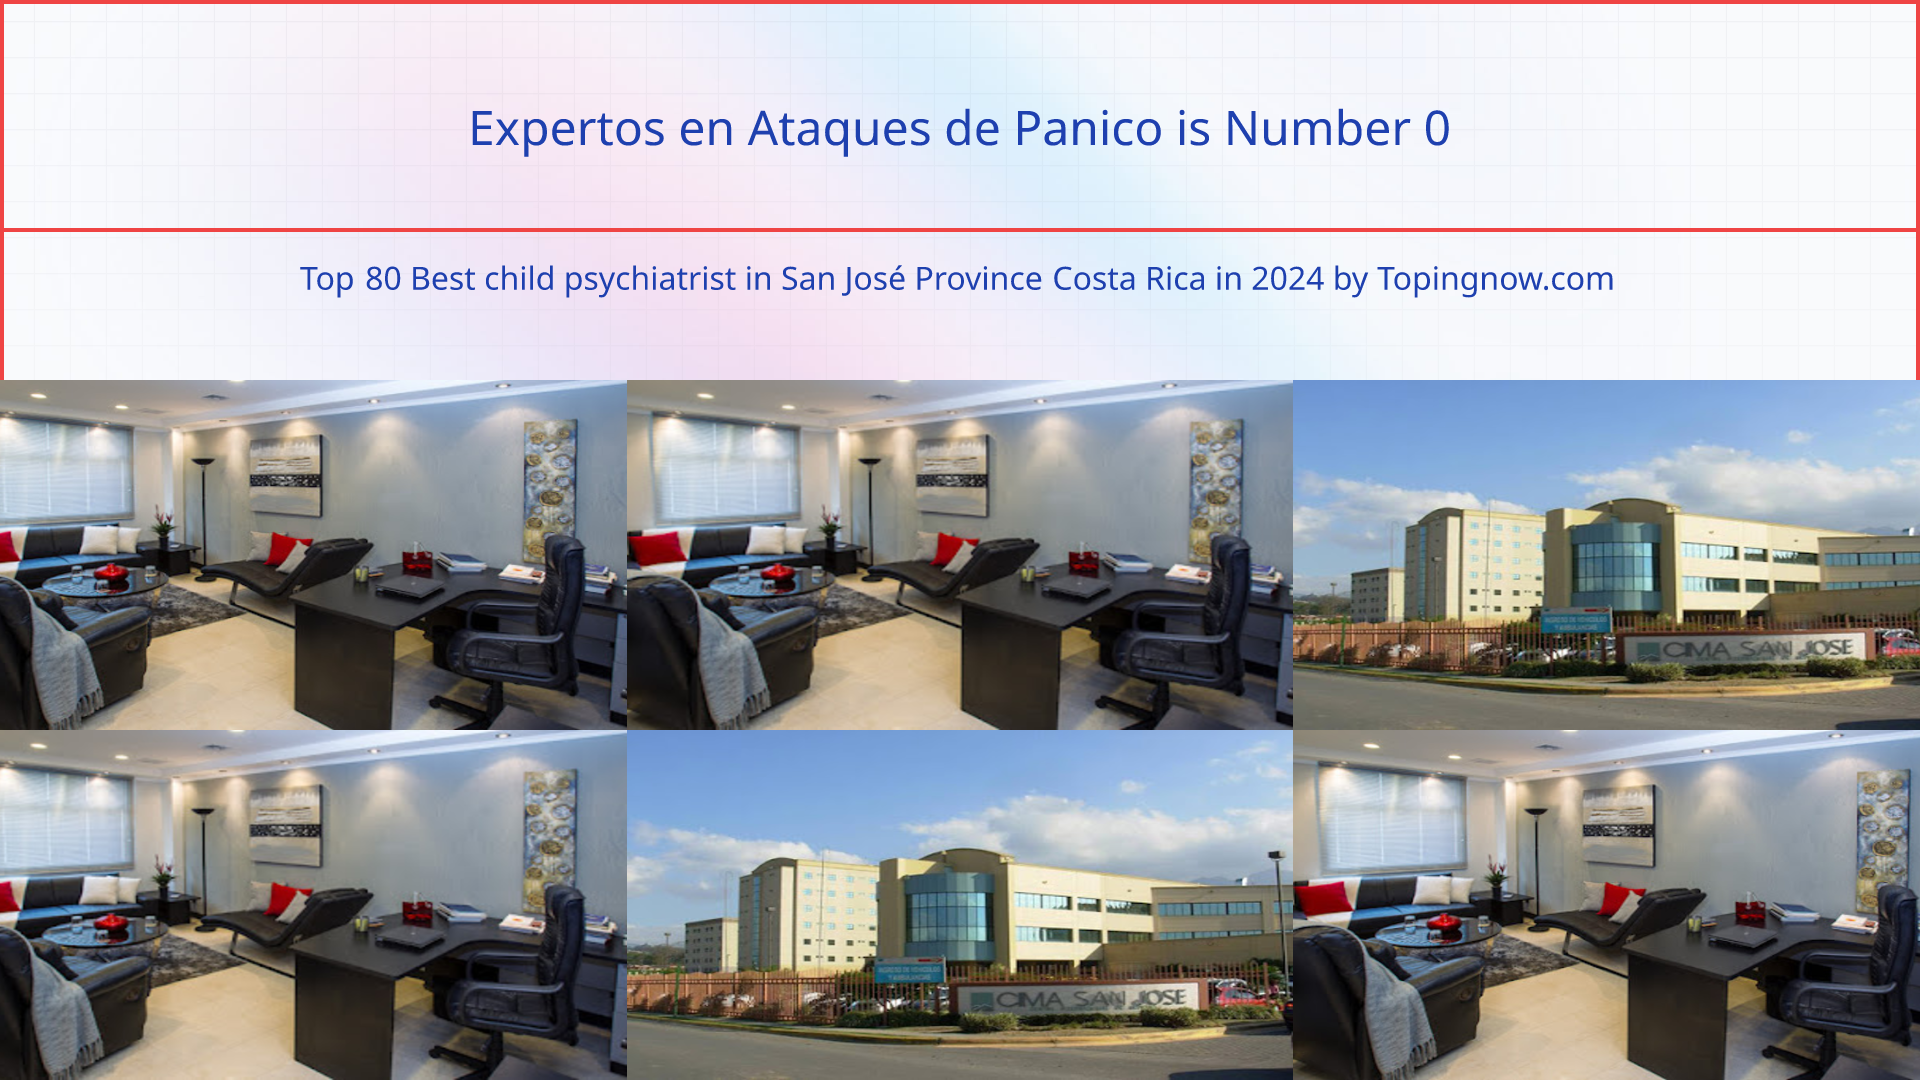 Expertos en Ataques de Panico: Top 80 Best child psychiatrist in San José Province Costa Rica in 2024